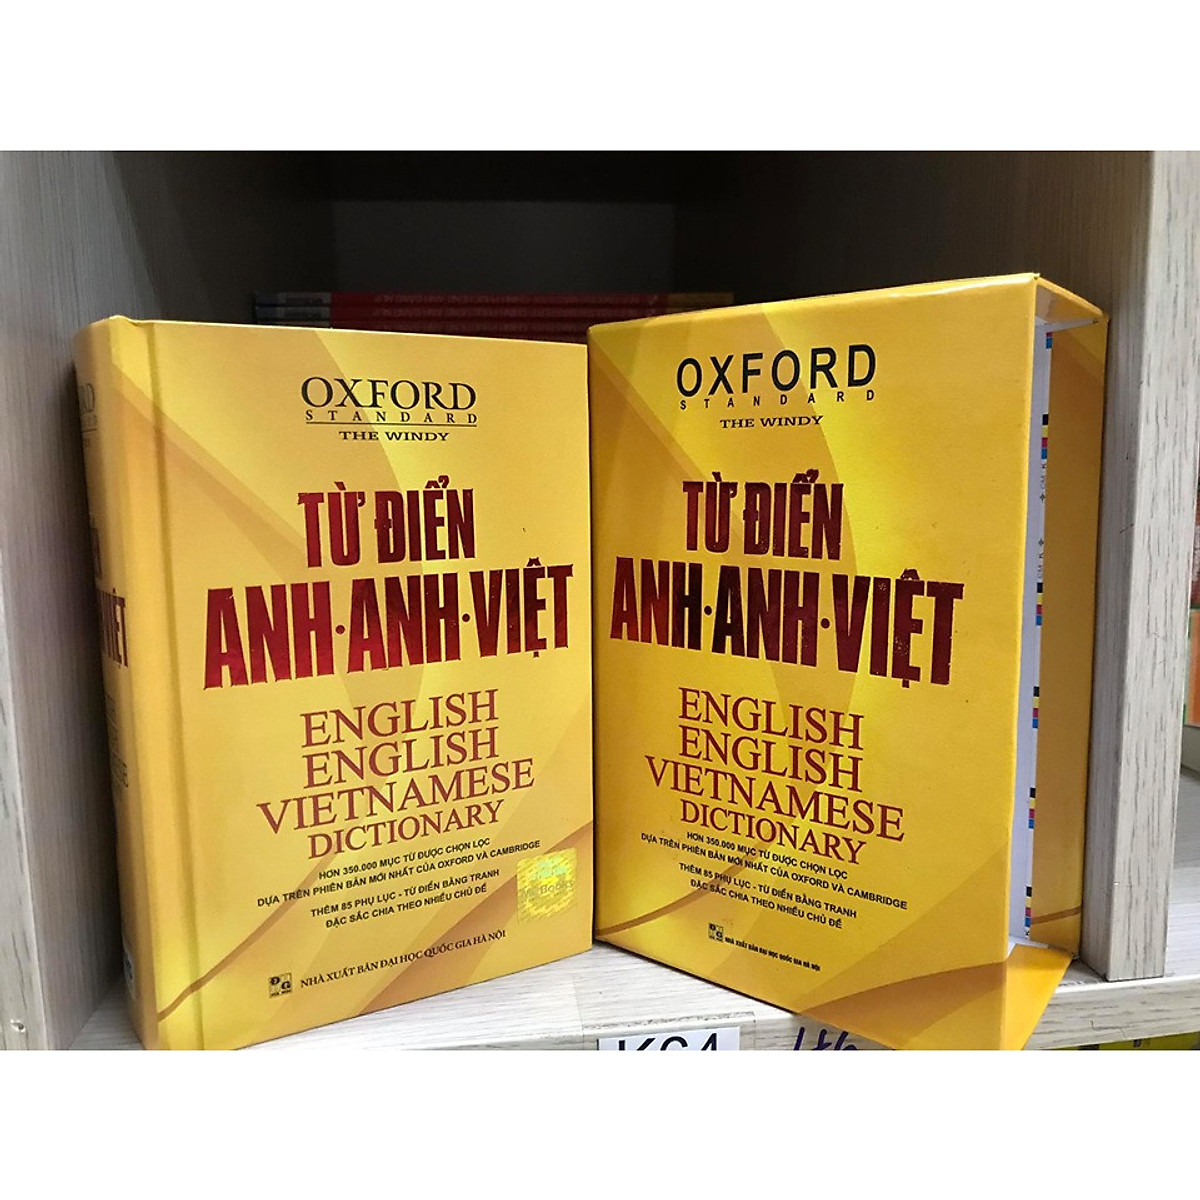 Từ điển Oxford Anh Anh Việt ( bìa vàng hộp )( tái bản mới nhất 2020 kt)